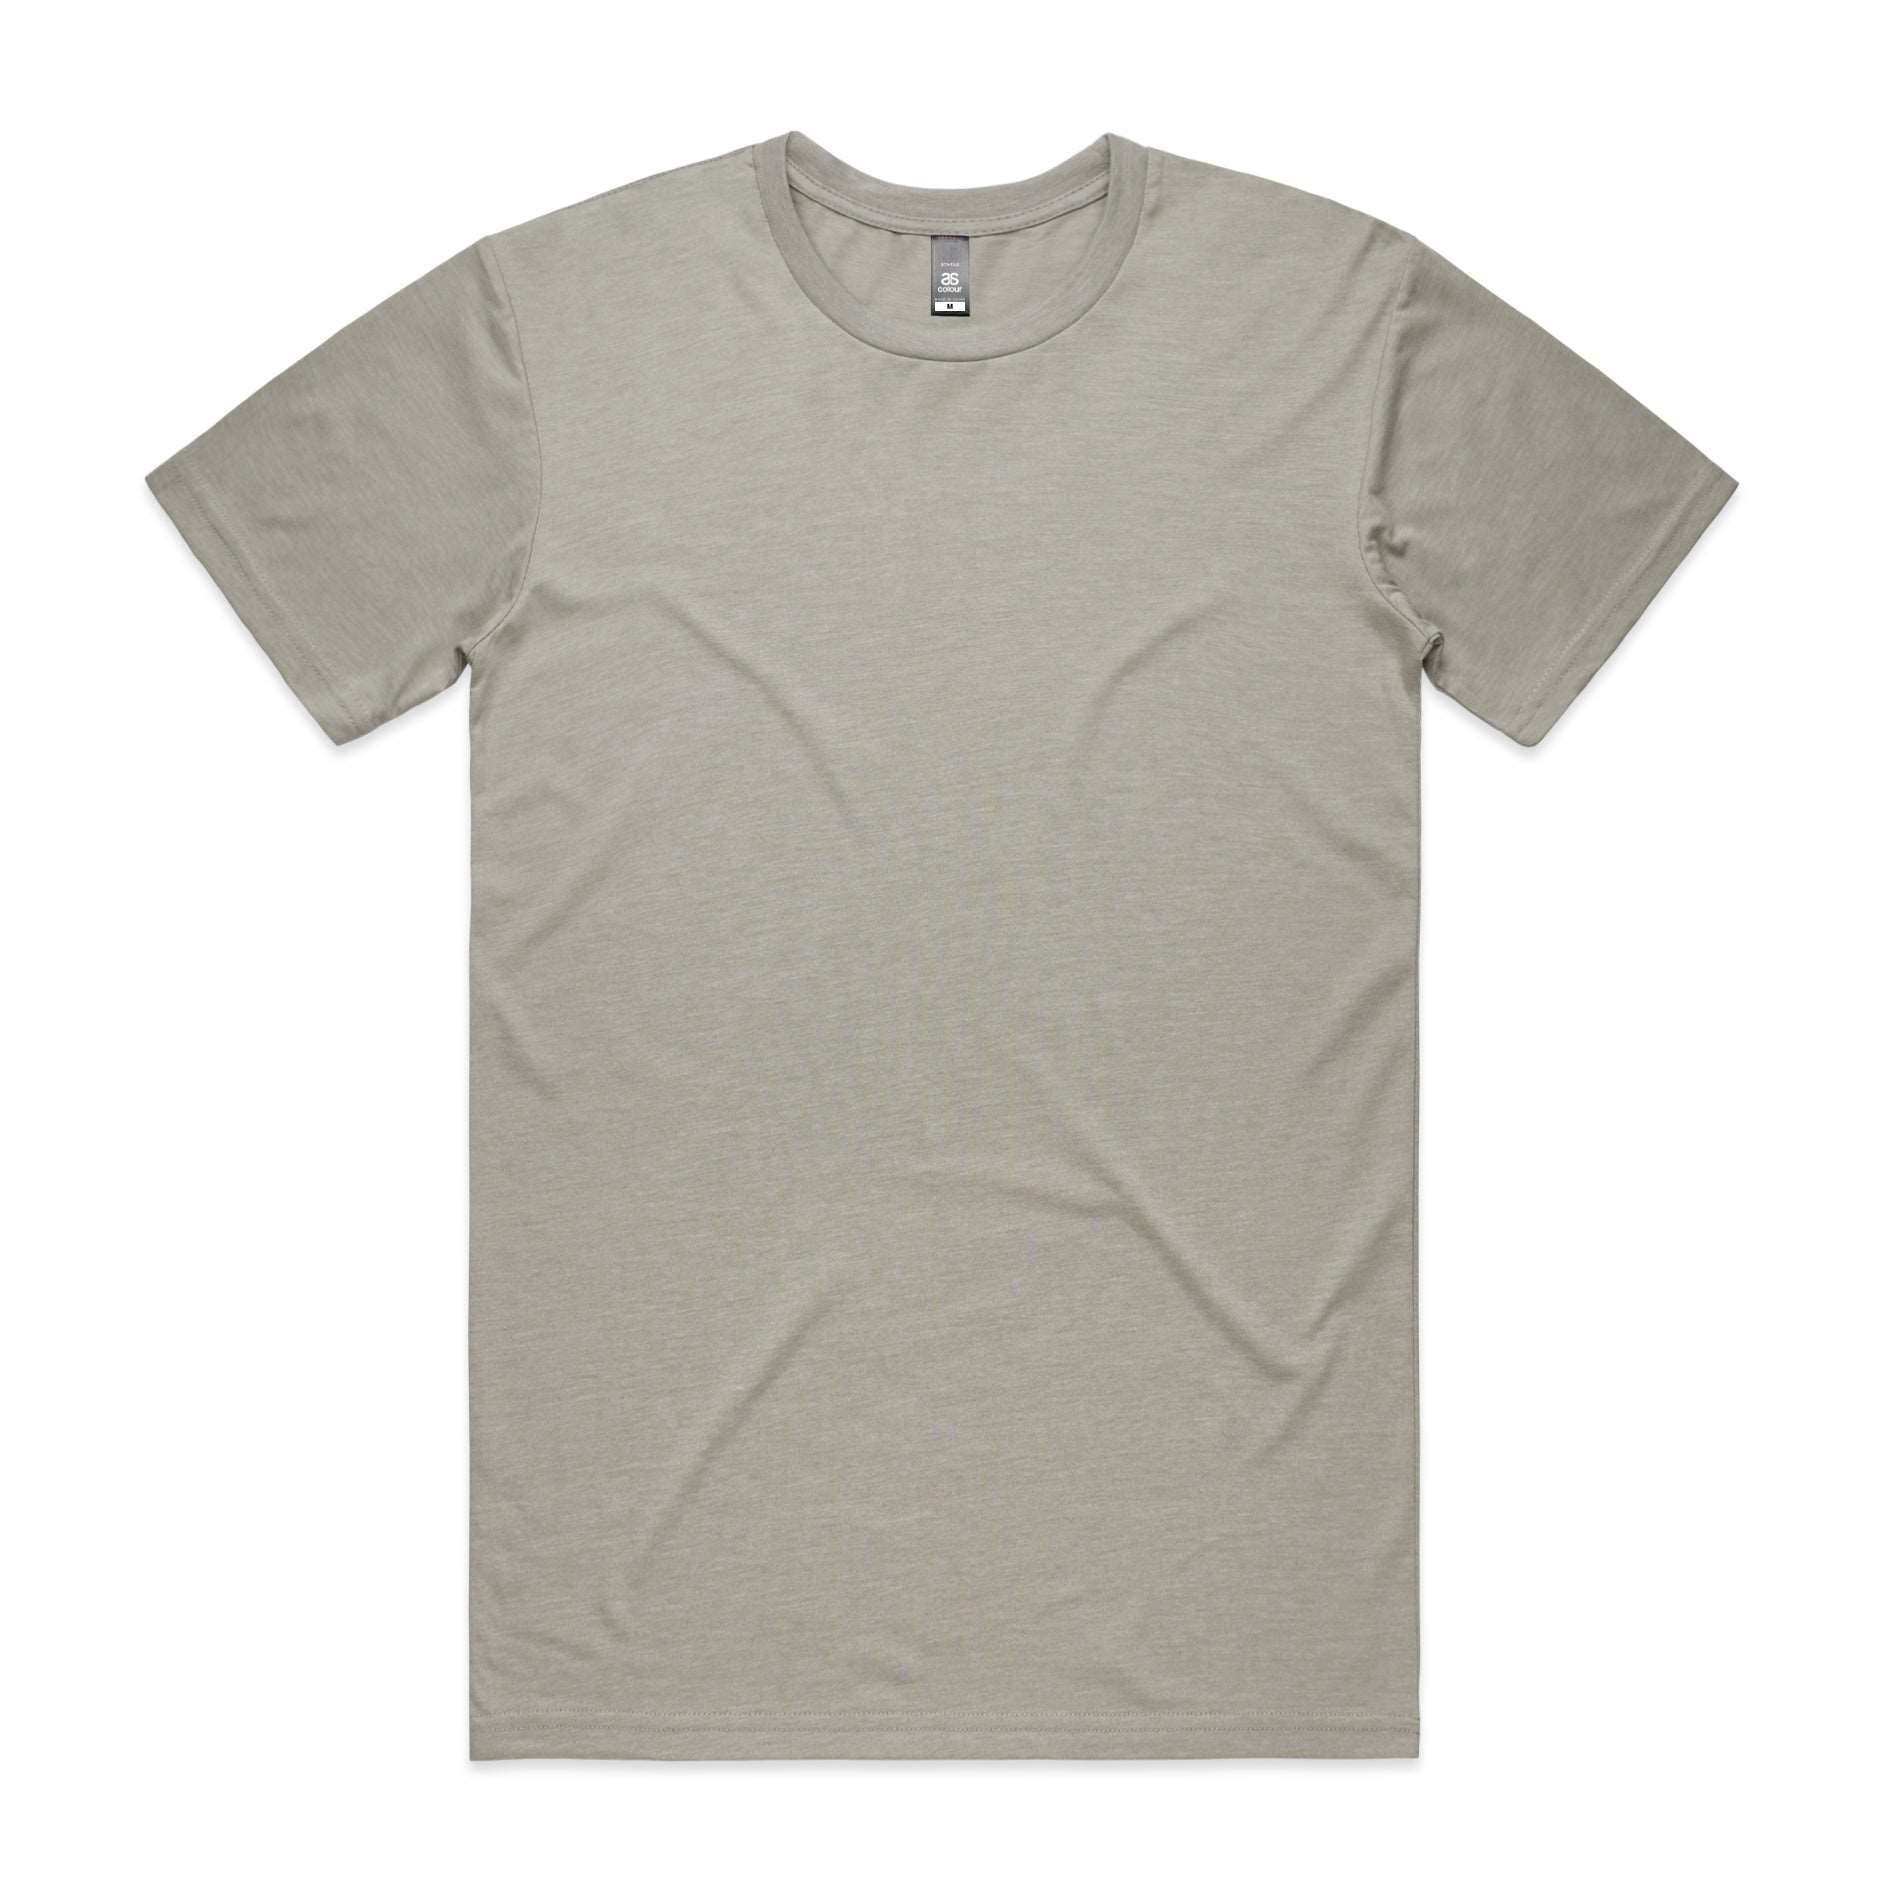 5001 - High Quality Tshirt - Plus Size